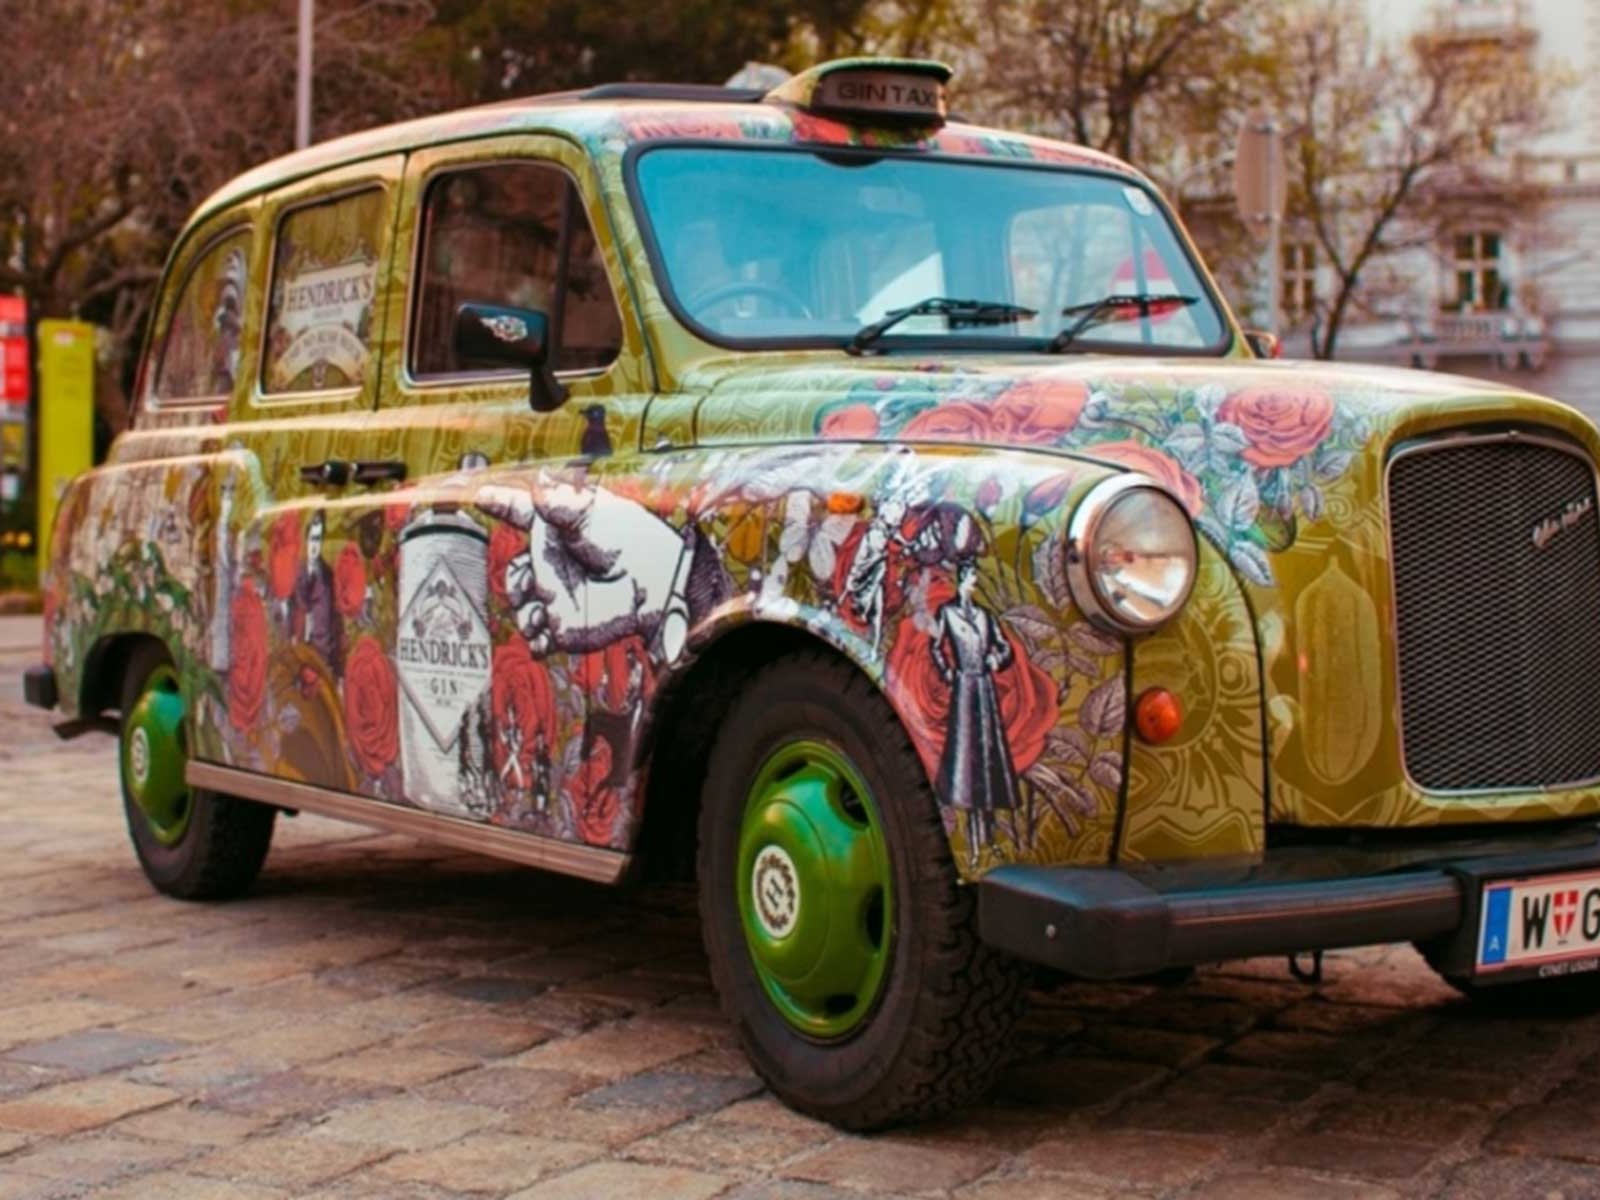 Das Hendrick's Gin-Taxi war bereits anlässlich des World Cucumber Day 2017 in Wien unterwegs. 